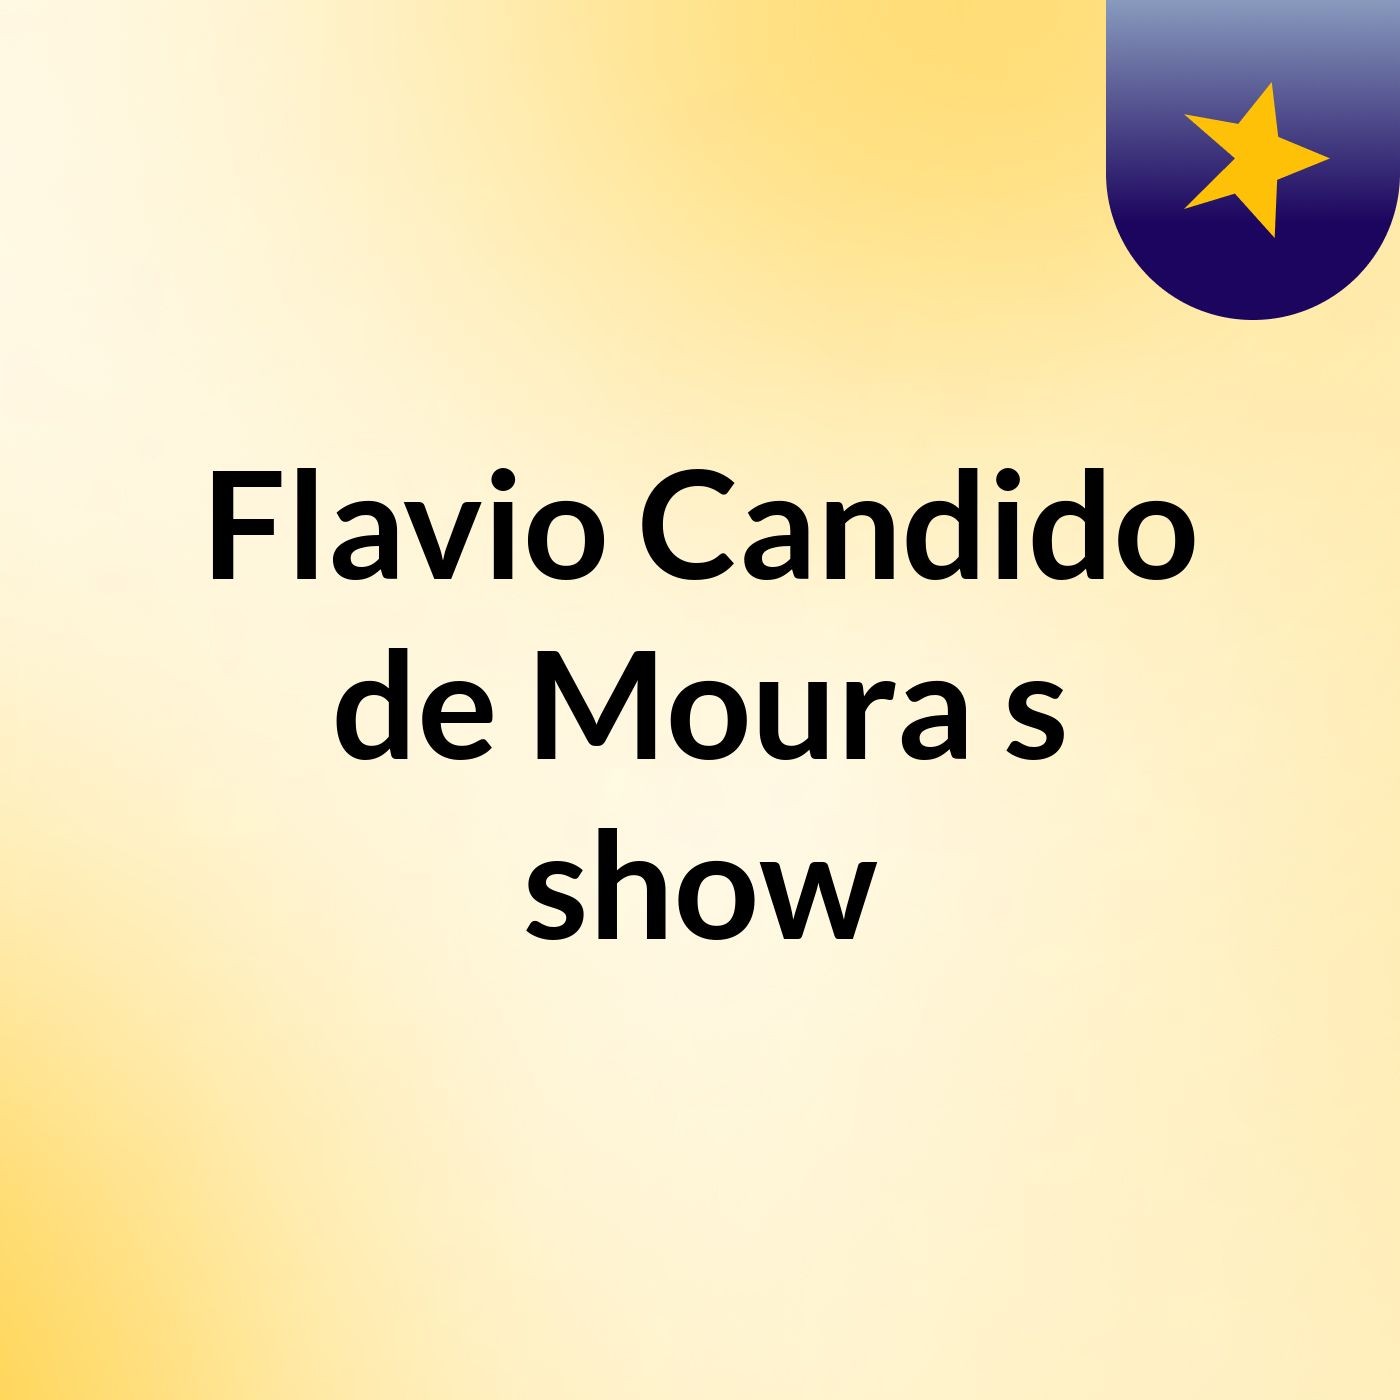 Flavio Candido de Moura's show